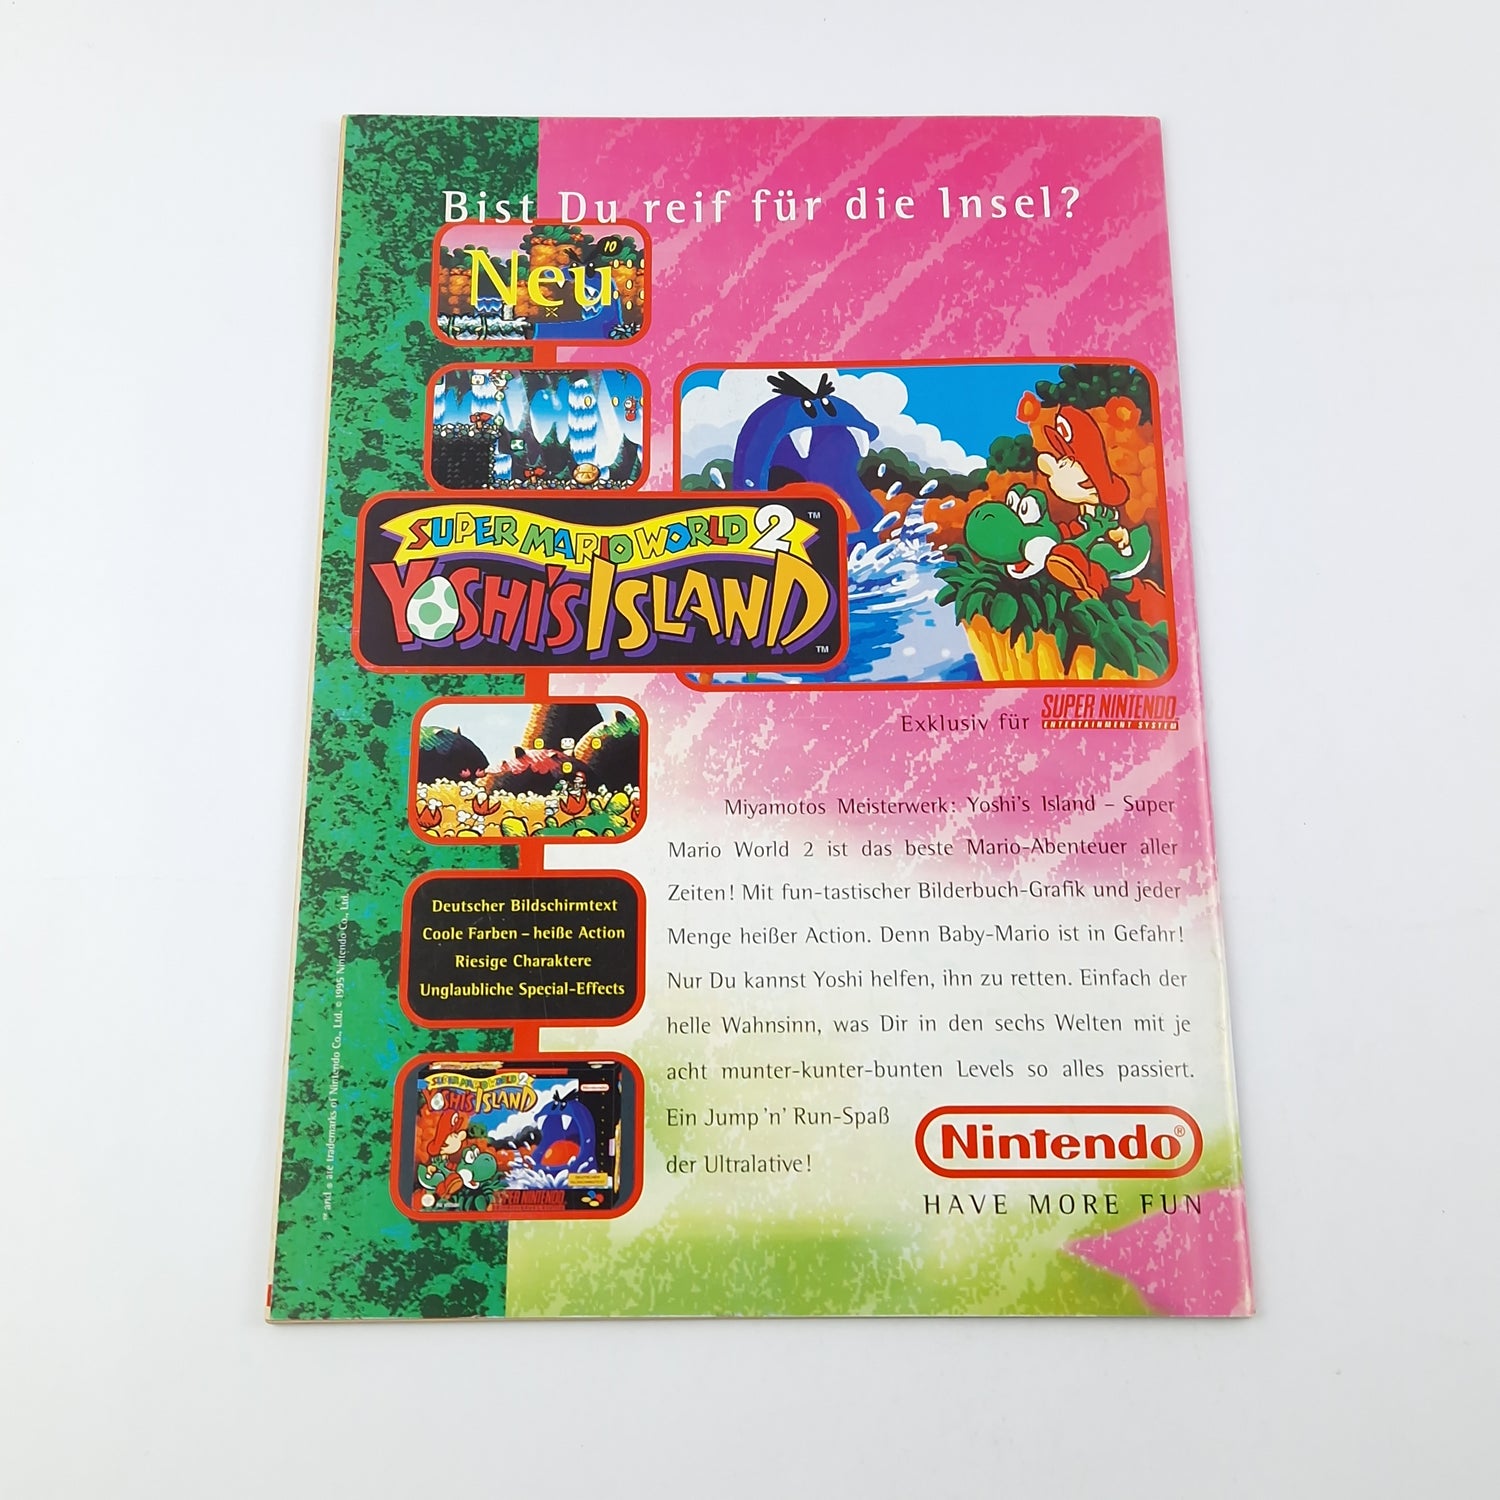 100% Nintendo TOTAL! Magazin : Earthworm Jim November 1995 - total Zeitschrift